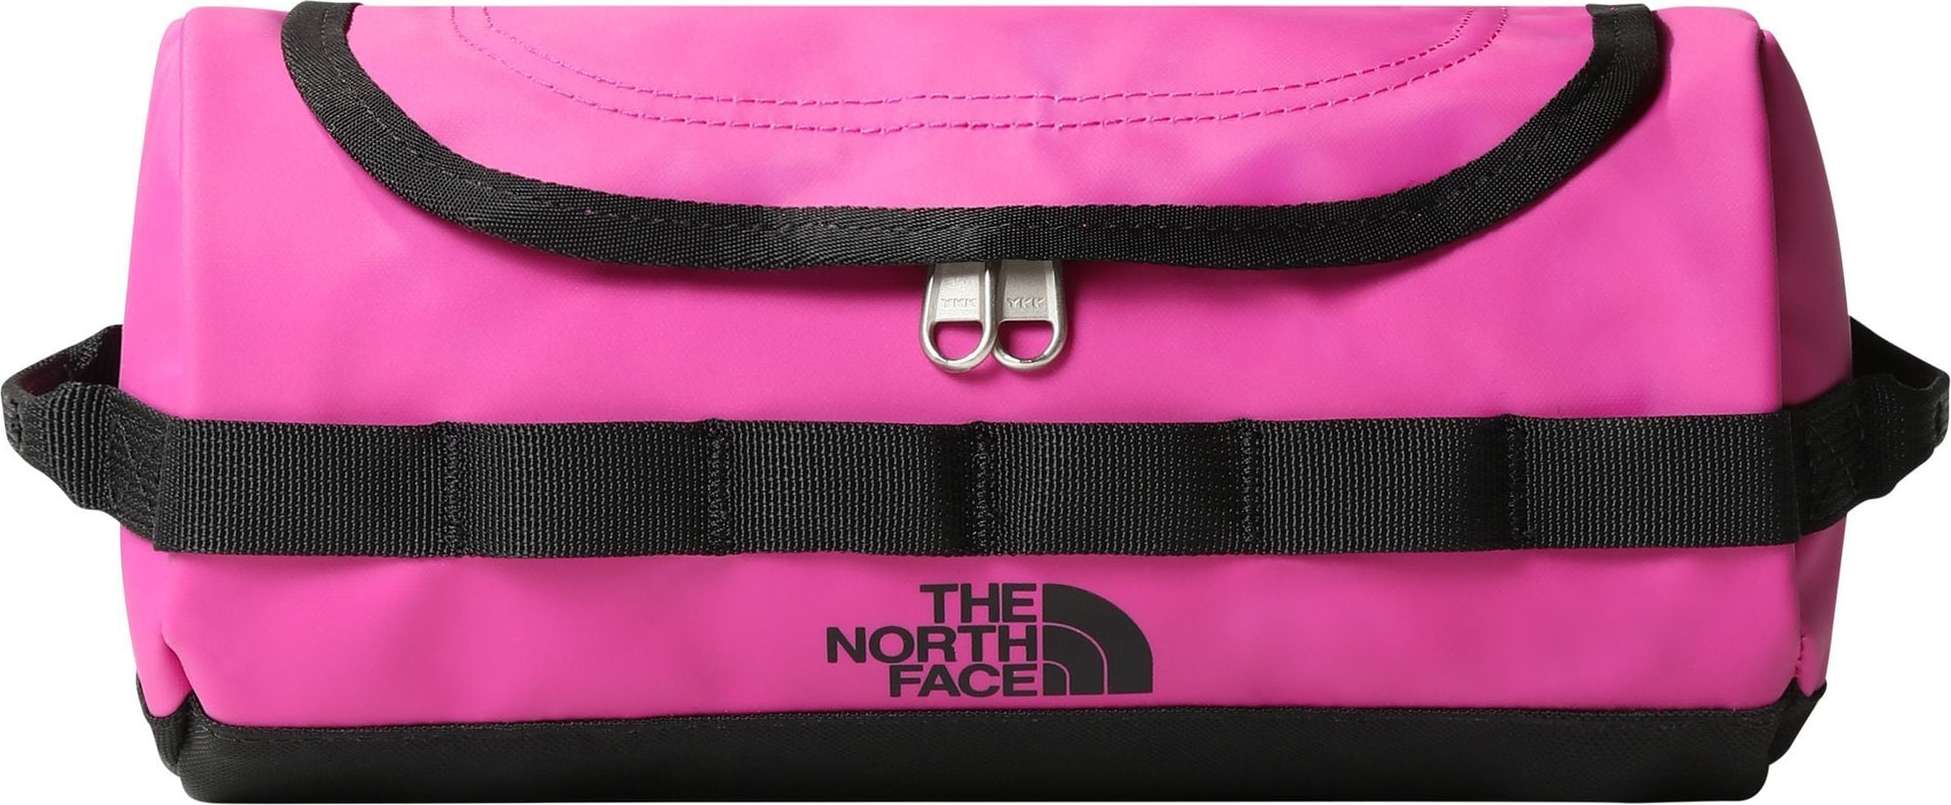 THE NORTH FACE Toaletní taška 'Base Camp' pink / černá